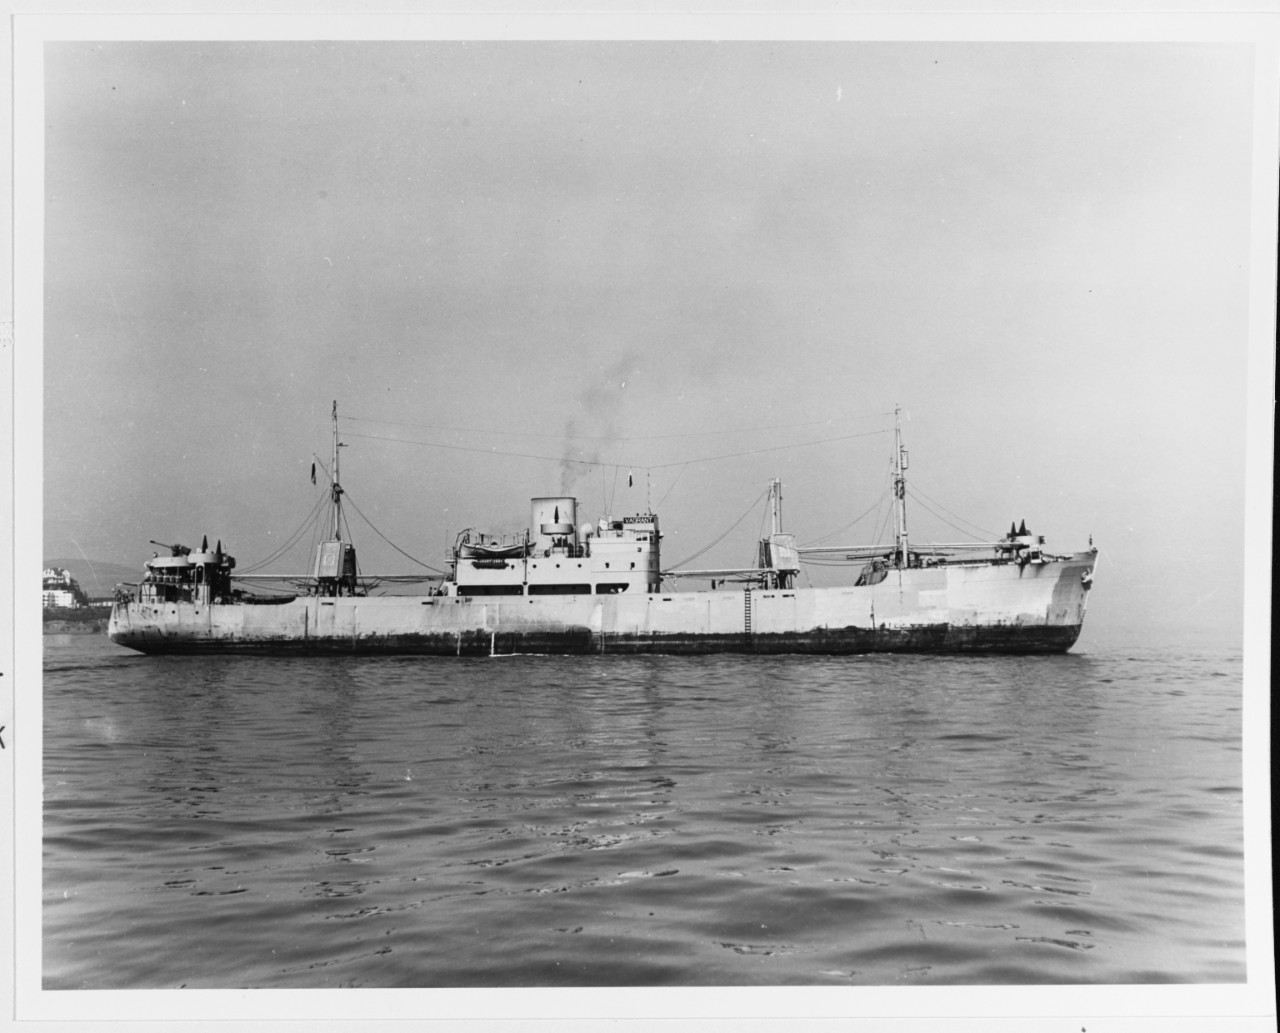 S.S. VAGRANT (Panamanian Cargo Ship, 1938-1968)